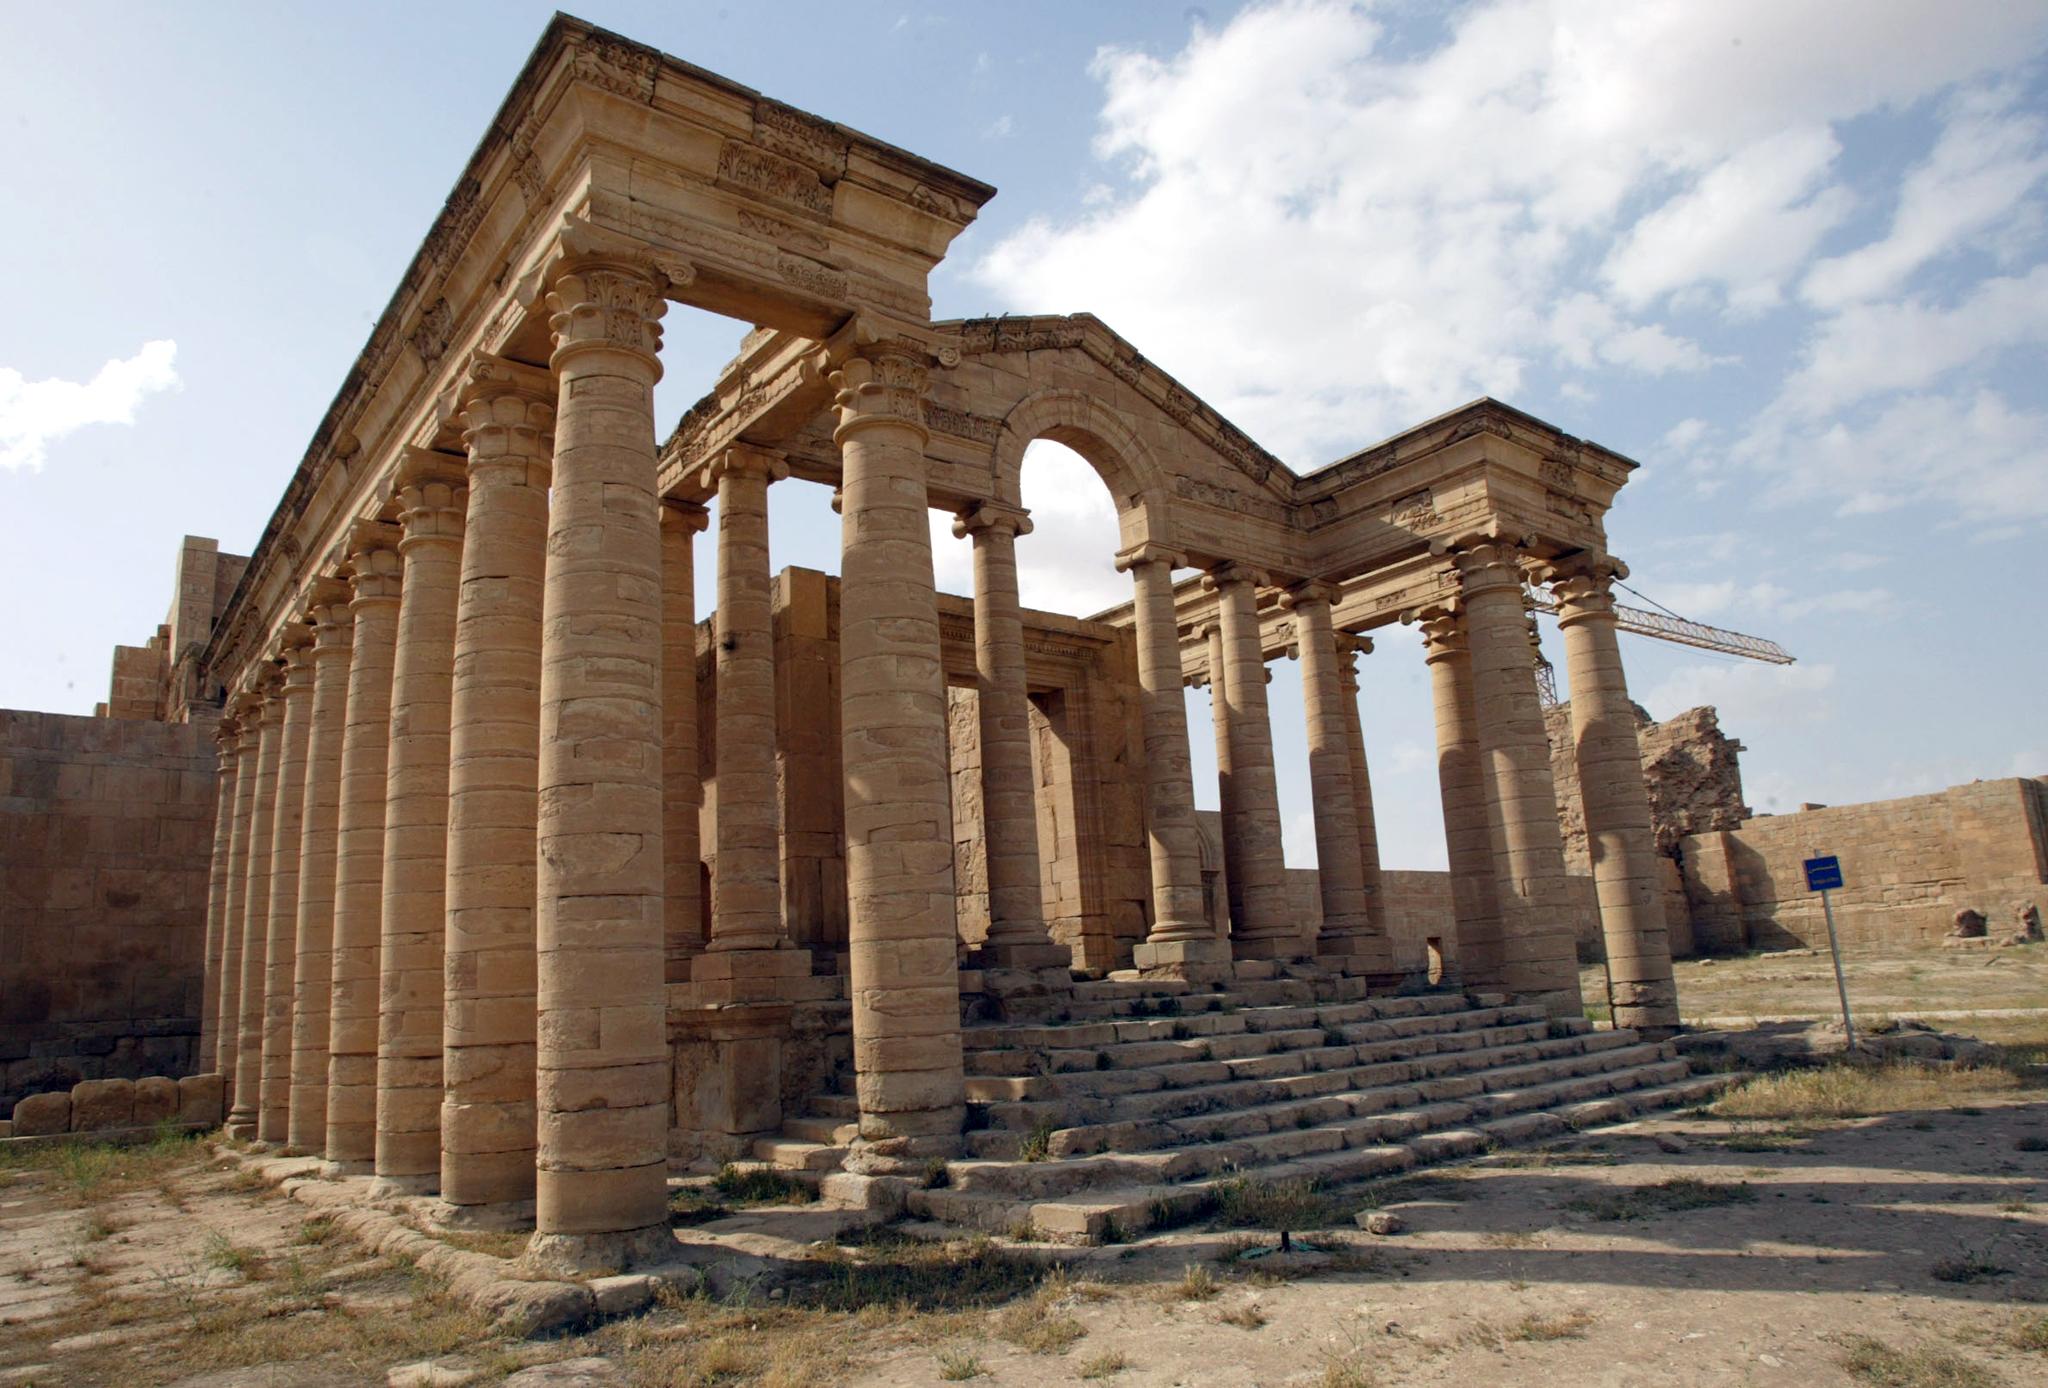 Συνεχίζουν τα εγκλήματα οι τζιχαντιστές, κατέστρεψαν την αρχαία πόλη Χάτρα